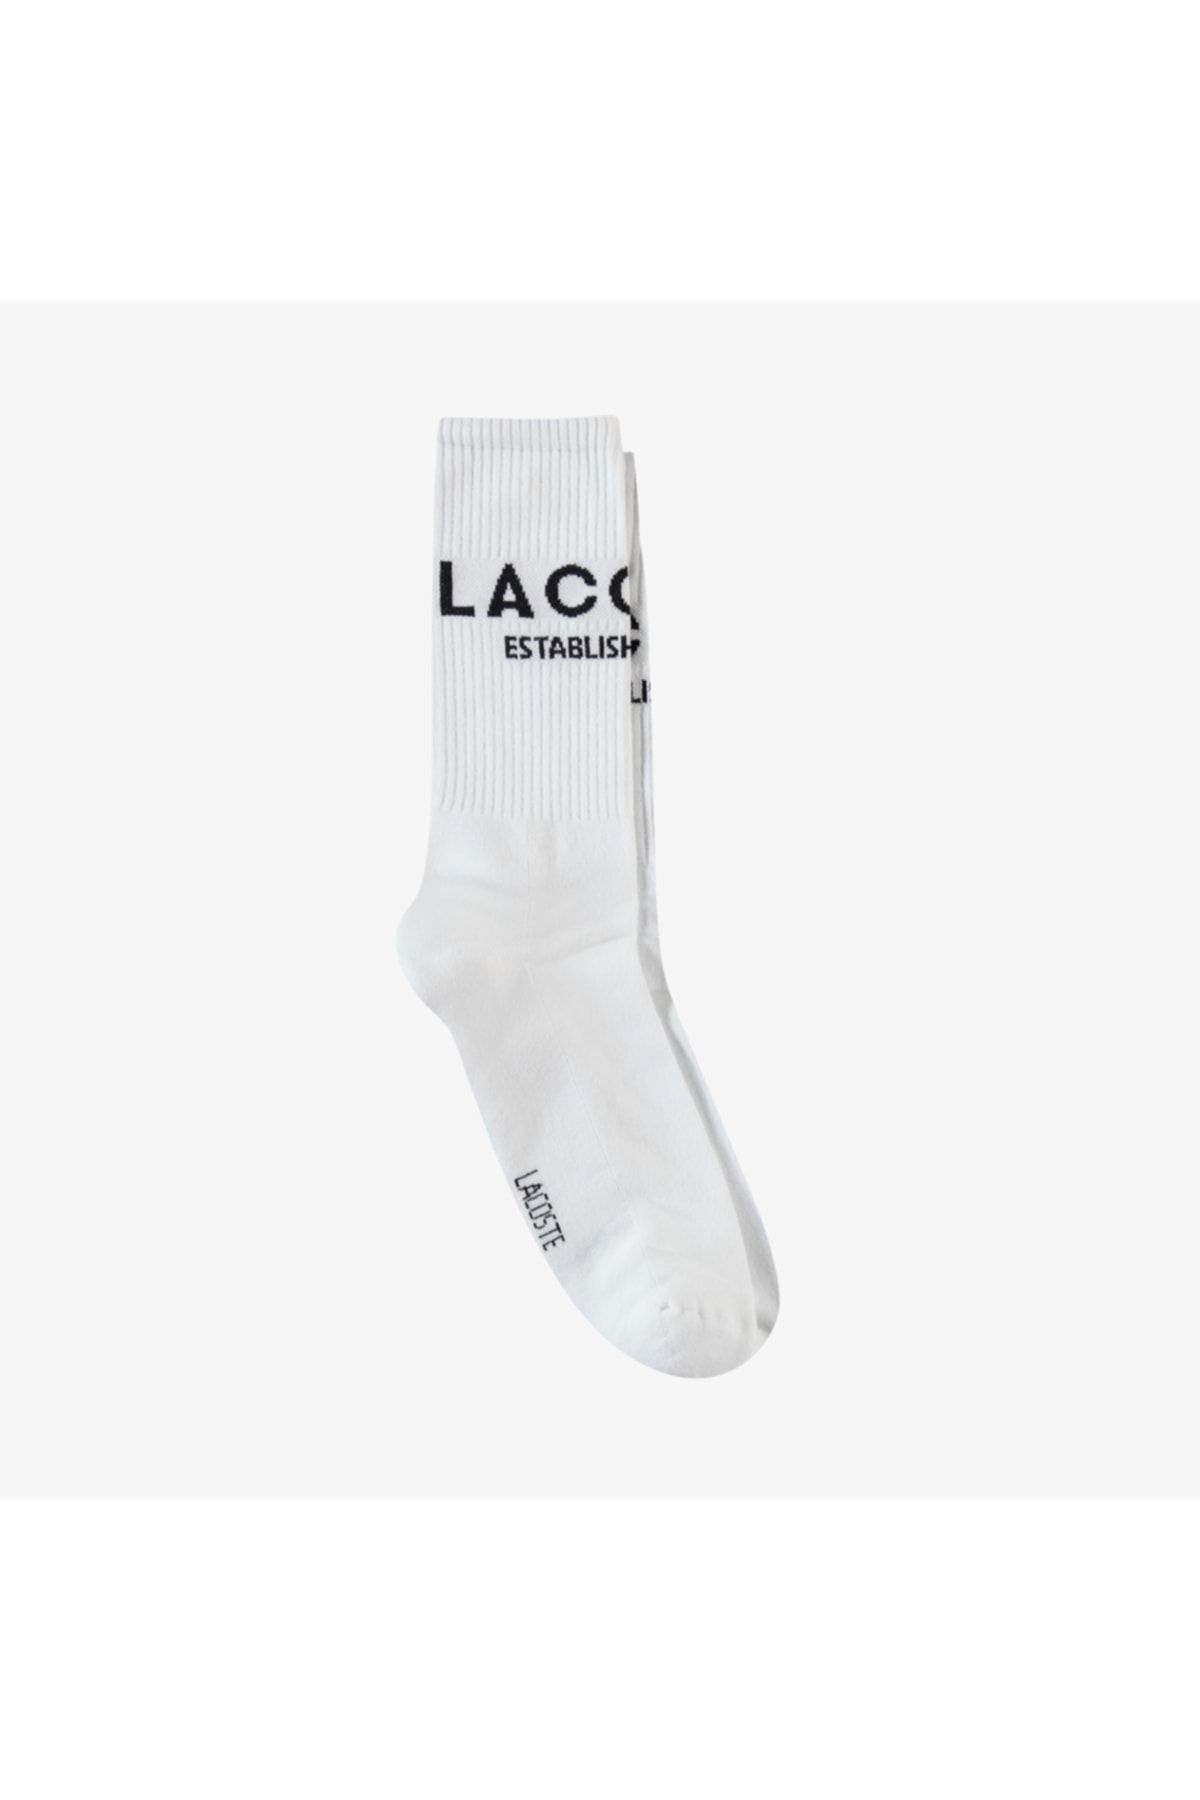 Lacoste Unisex Uzun Baskılı Beyaz Çorap RA0205